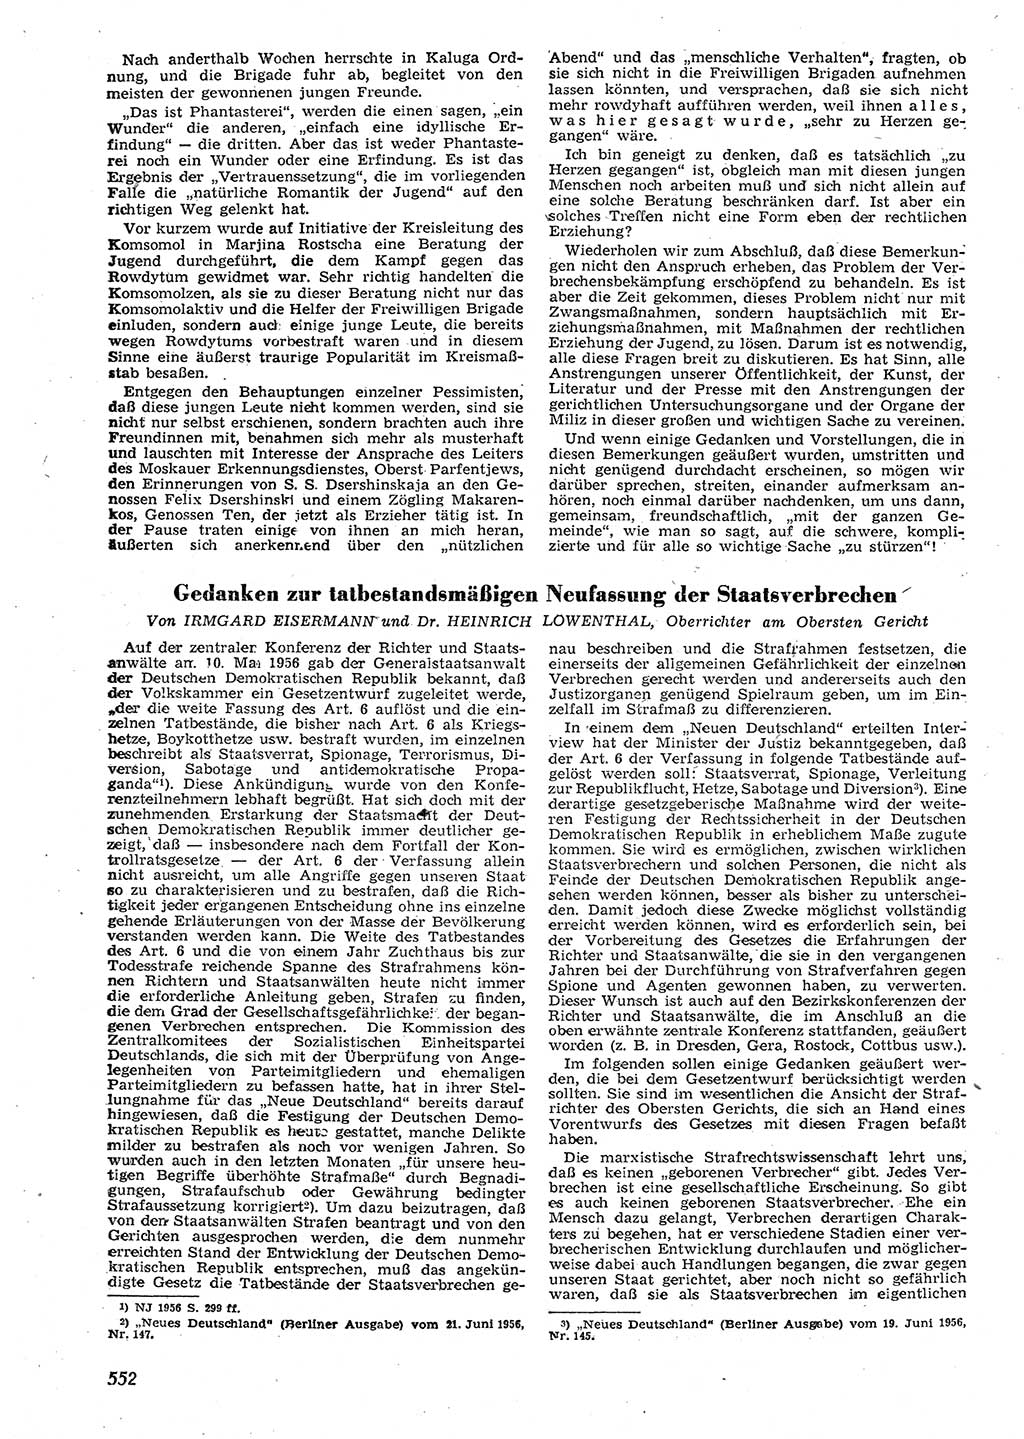 Neue Justiz (NJ), Zeitschrift für Recht und Rechtswissenschaft [Deutsche Demokratische Republik (DDR)], 10. Jahrgang 1956, Seite 552 (NJ DDR 1956, S. 552)